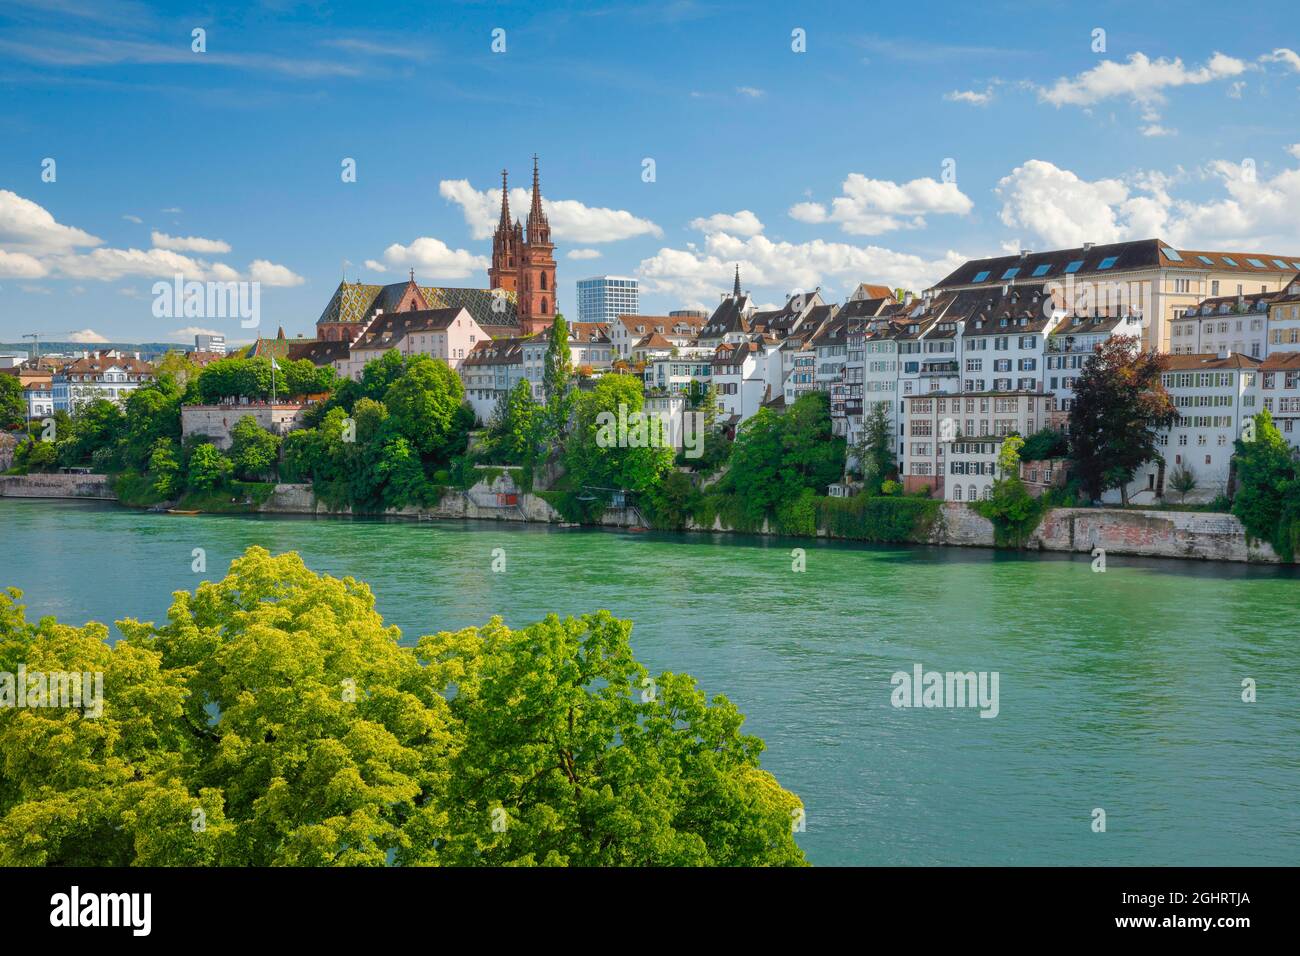 Blick auf den Basler Dom mitten in der Altstadt von Basel mit dem türkisfarbenen Rhein im Vordergrund Stockfoto